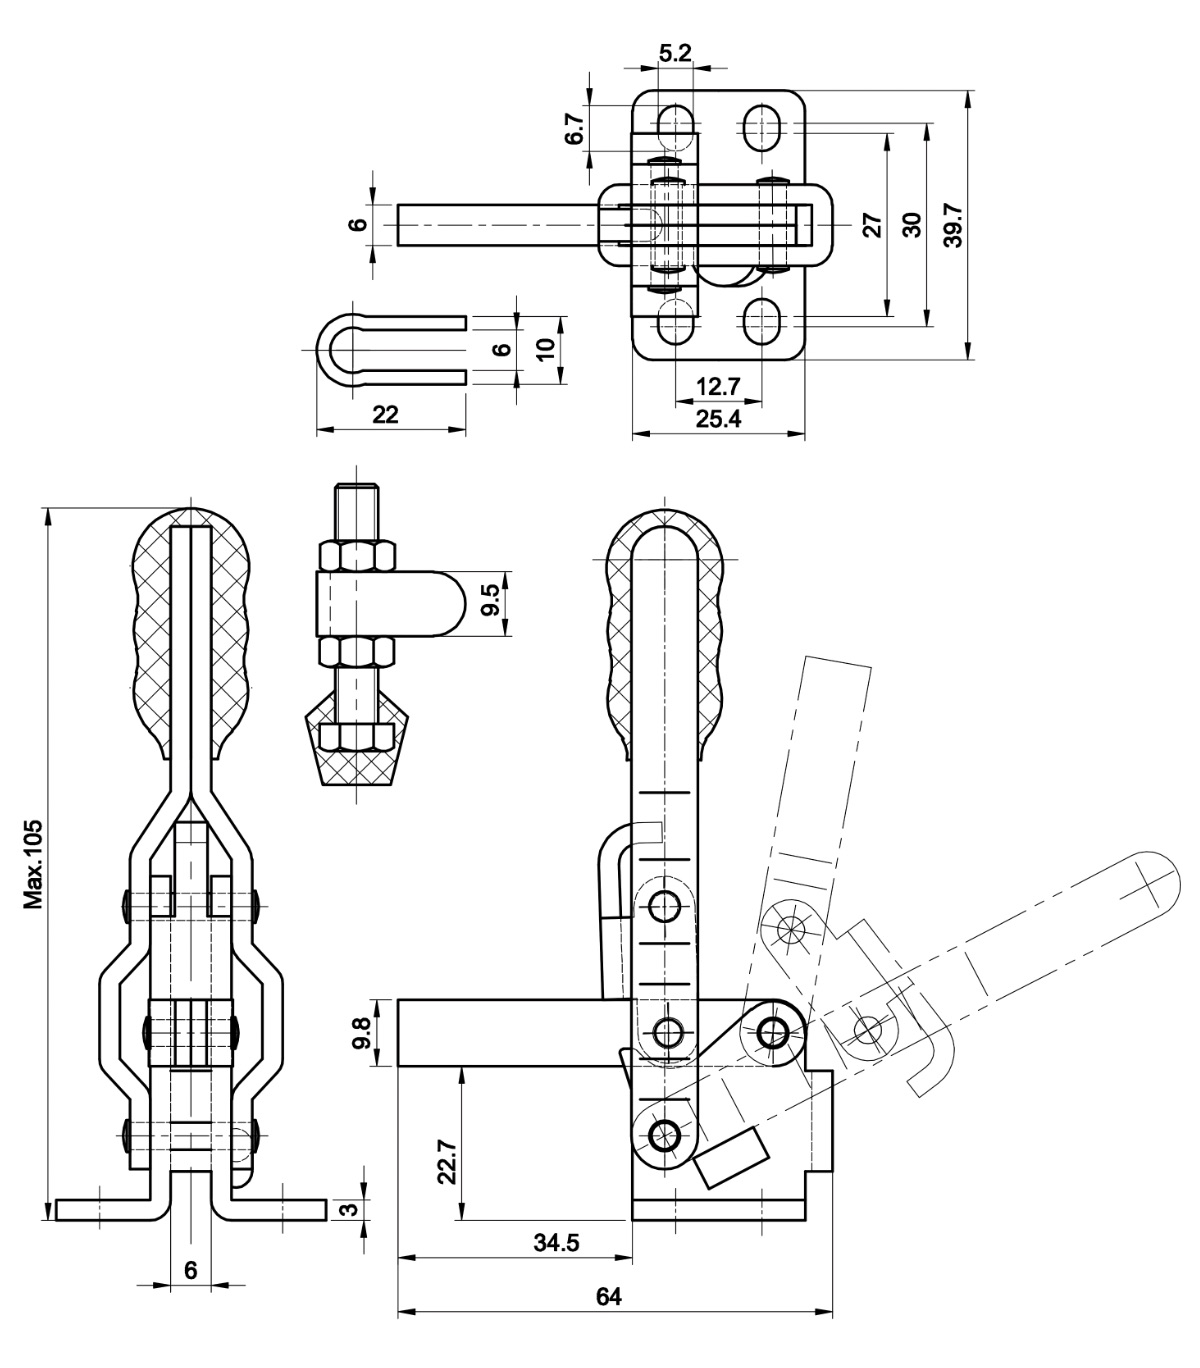 DST-12060 Technische Zeichnung Senkrechtspanner Vertikalspanner waagrechter Fuss 910N